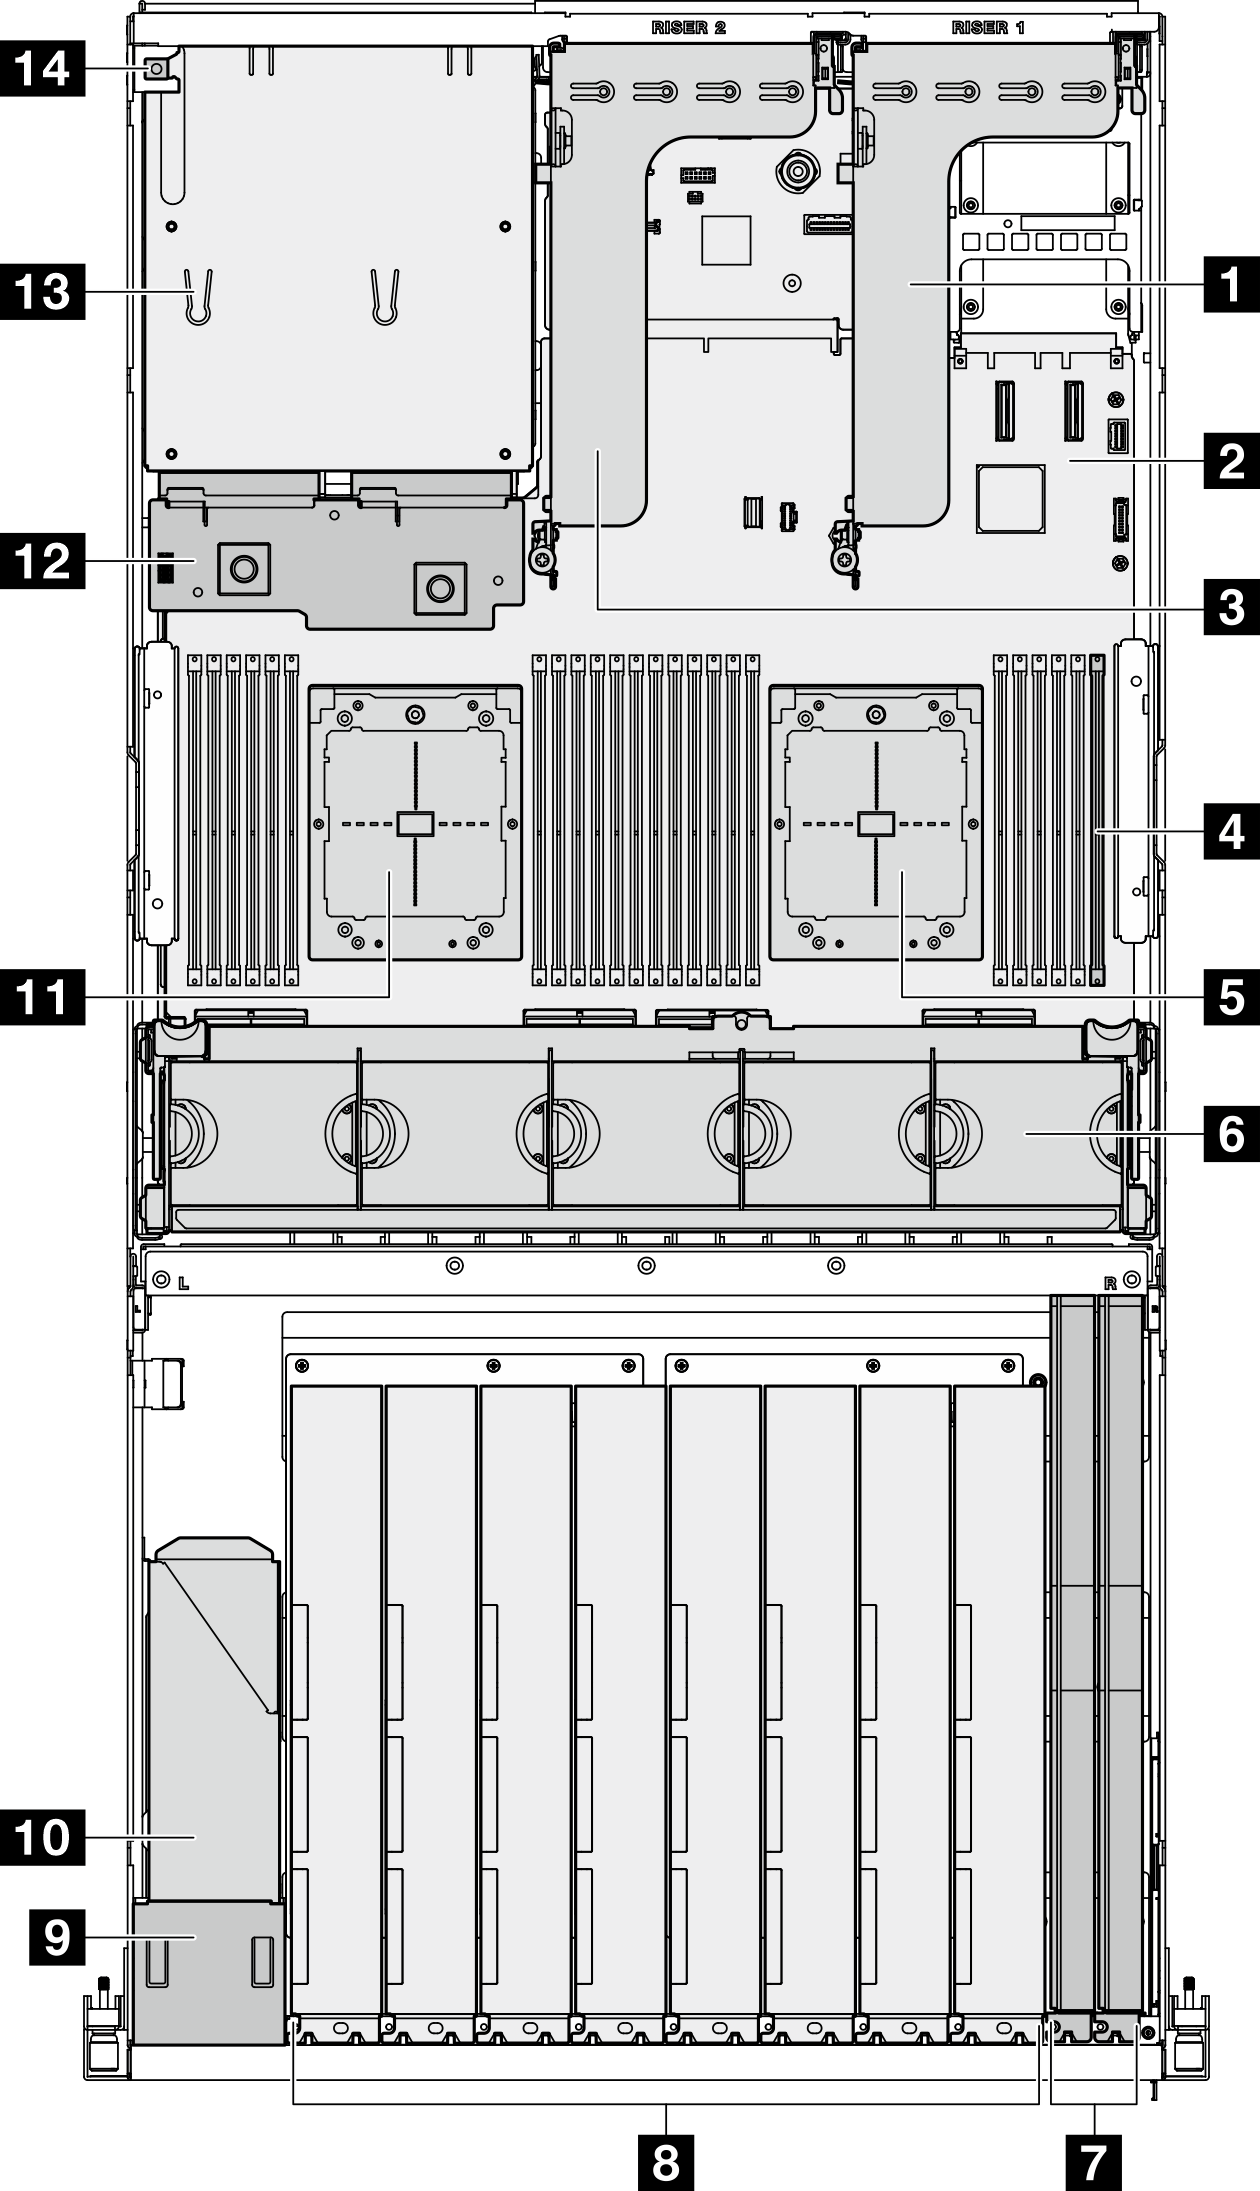 Top view of the Modelo de GPU 8-DW